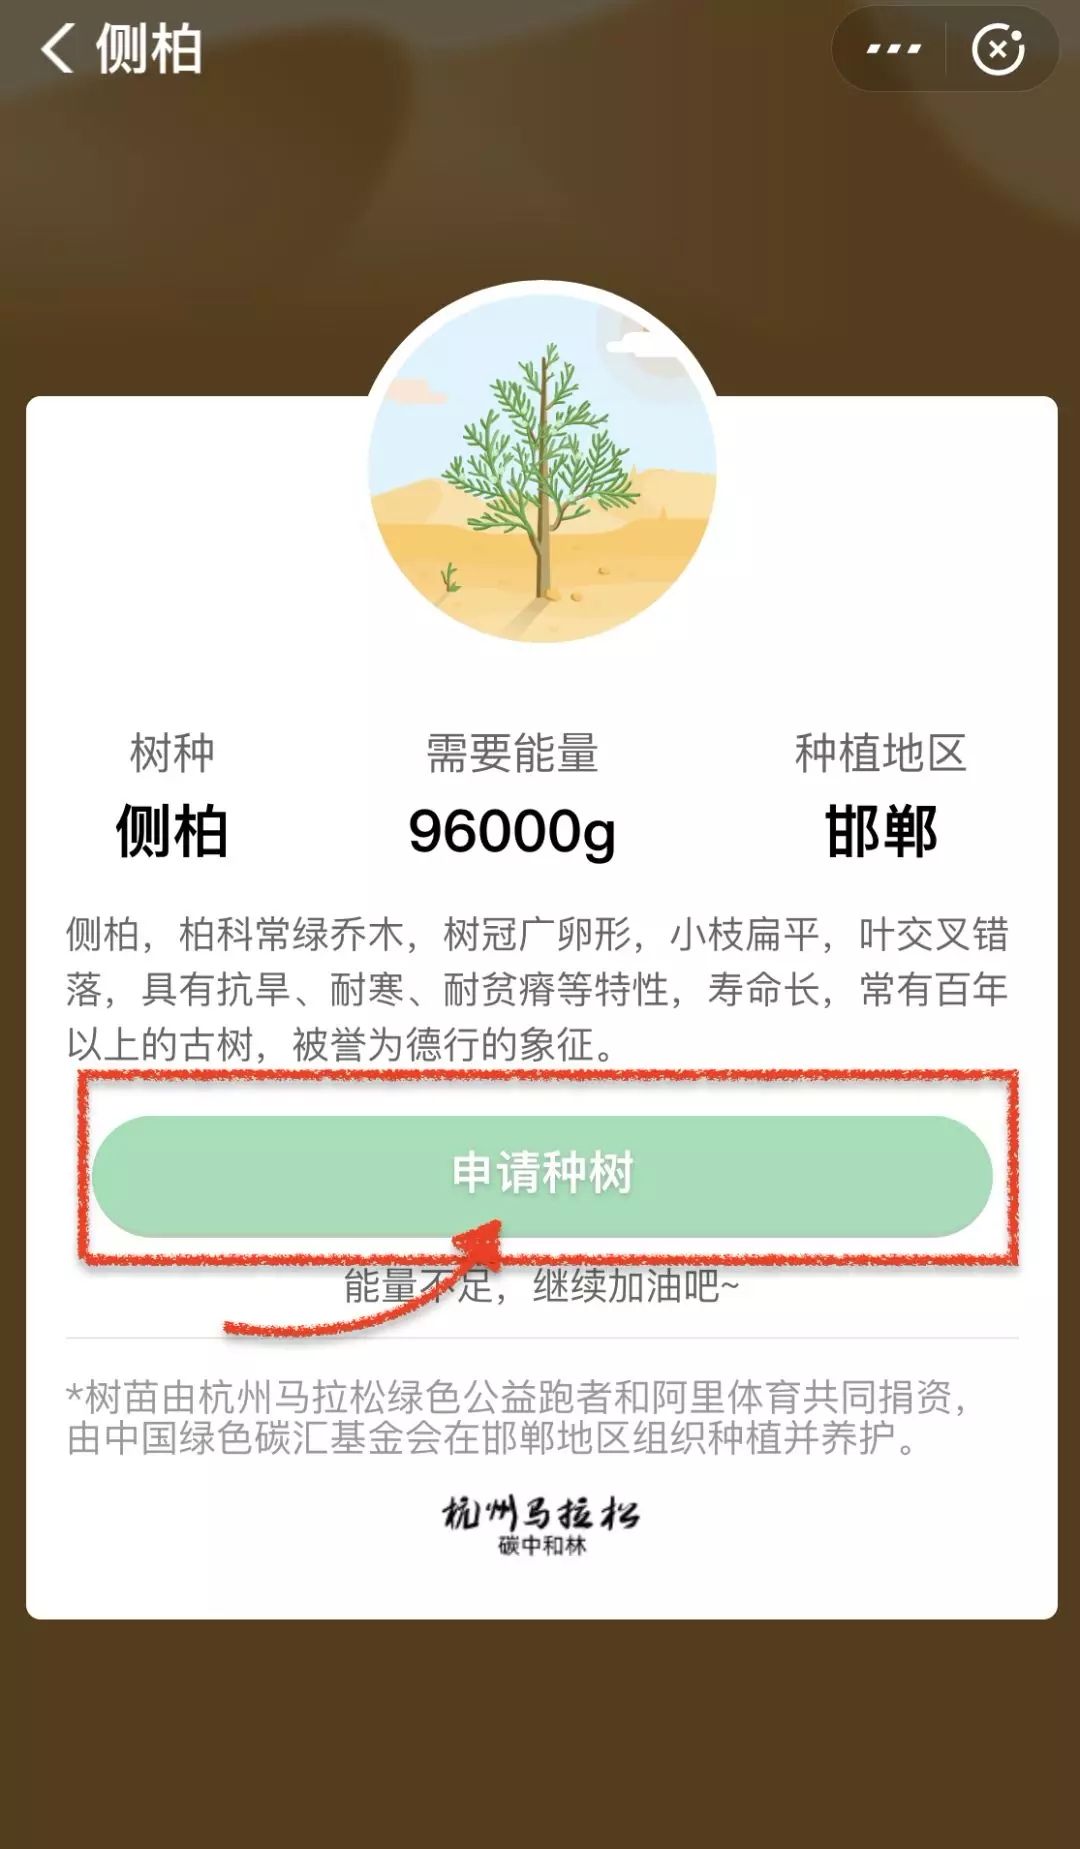 中国绿色碳汇基金会组织实施的碳中和项目汇总， 低碳旅游基金多个碳中和项目录入(图124)